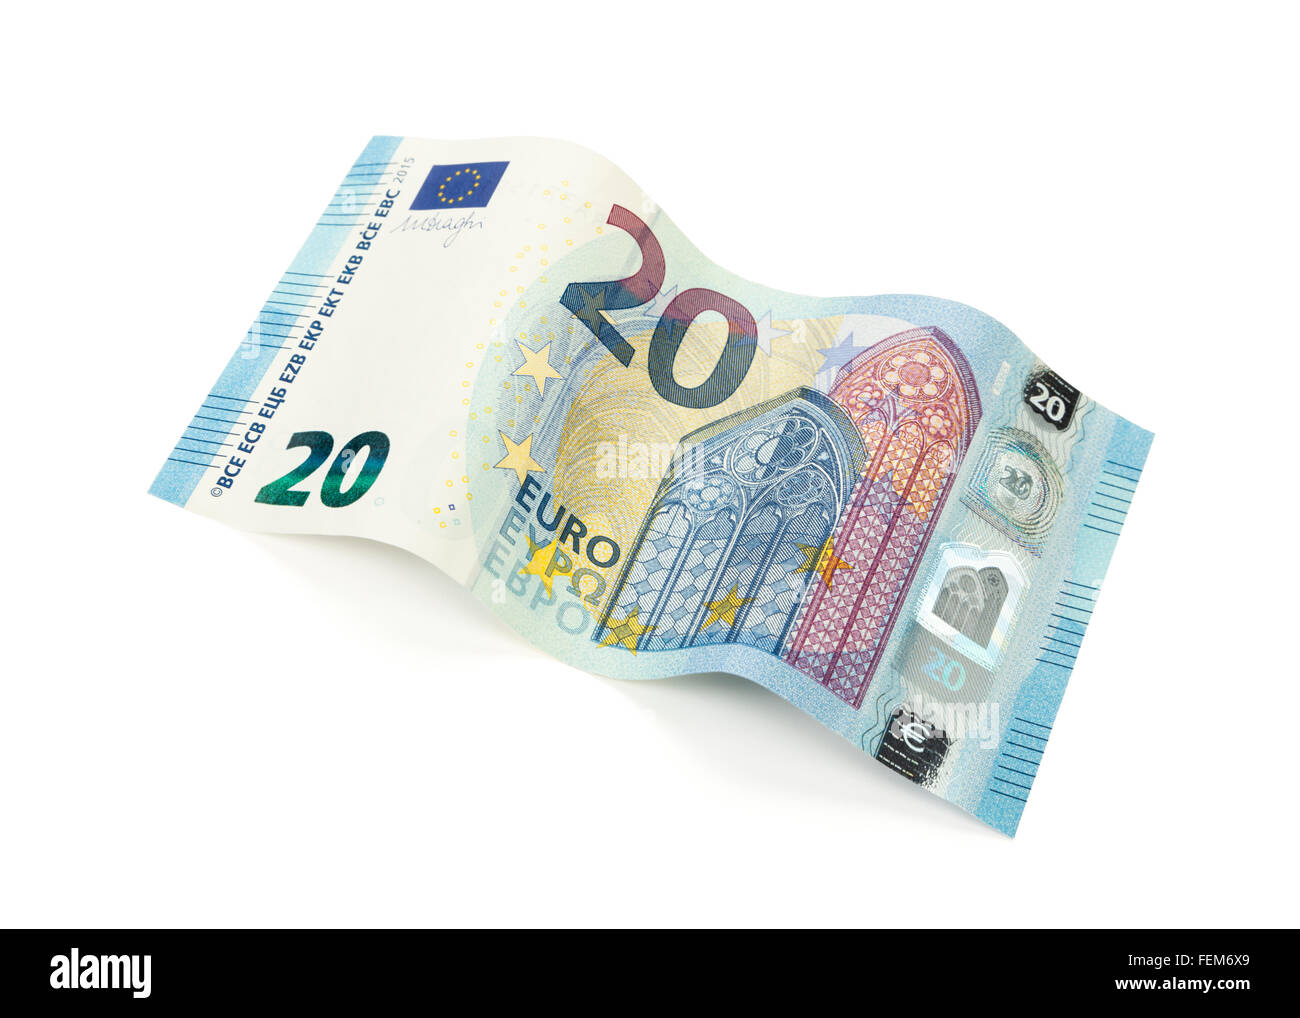 20 Euros nueva factura emitida en 2015 establecidas en forma de onda sobre fondo blanco. Foto de stock